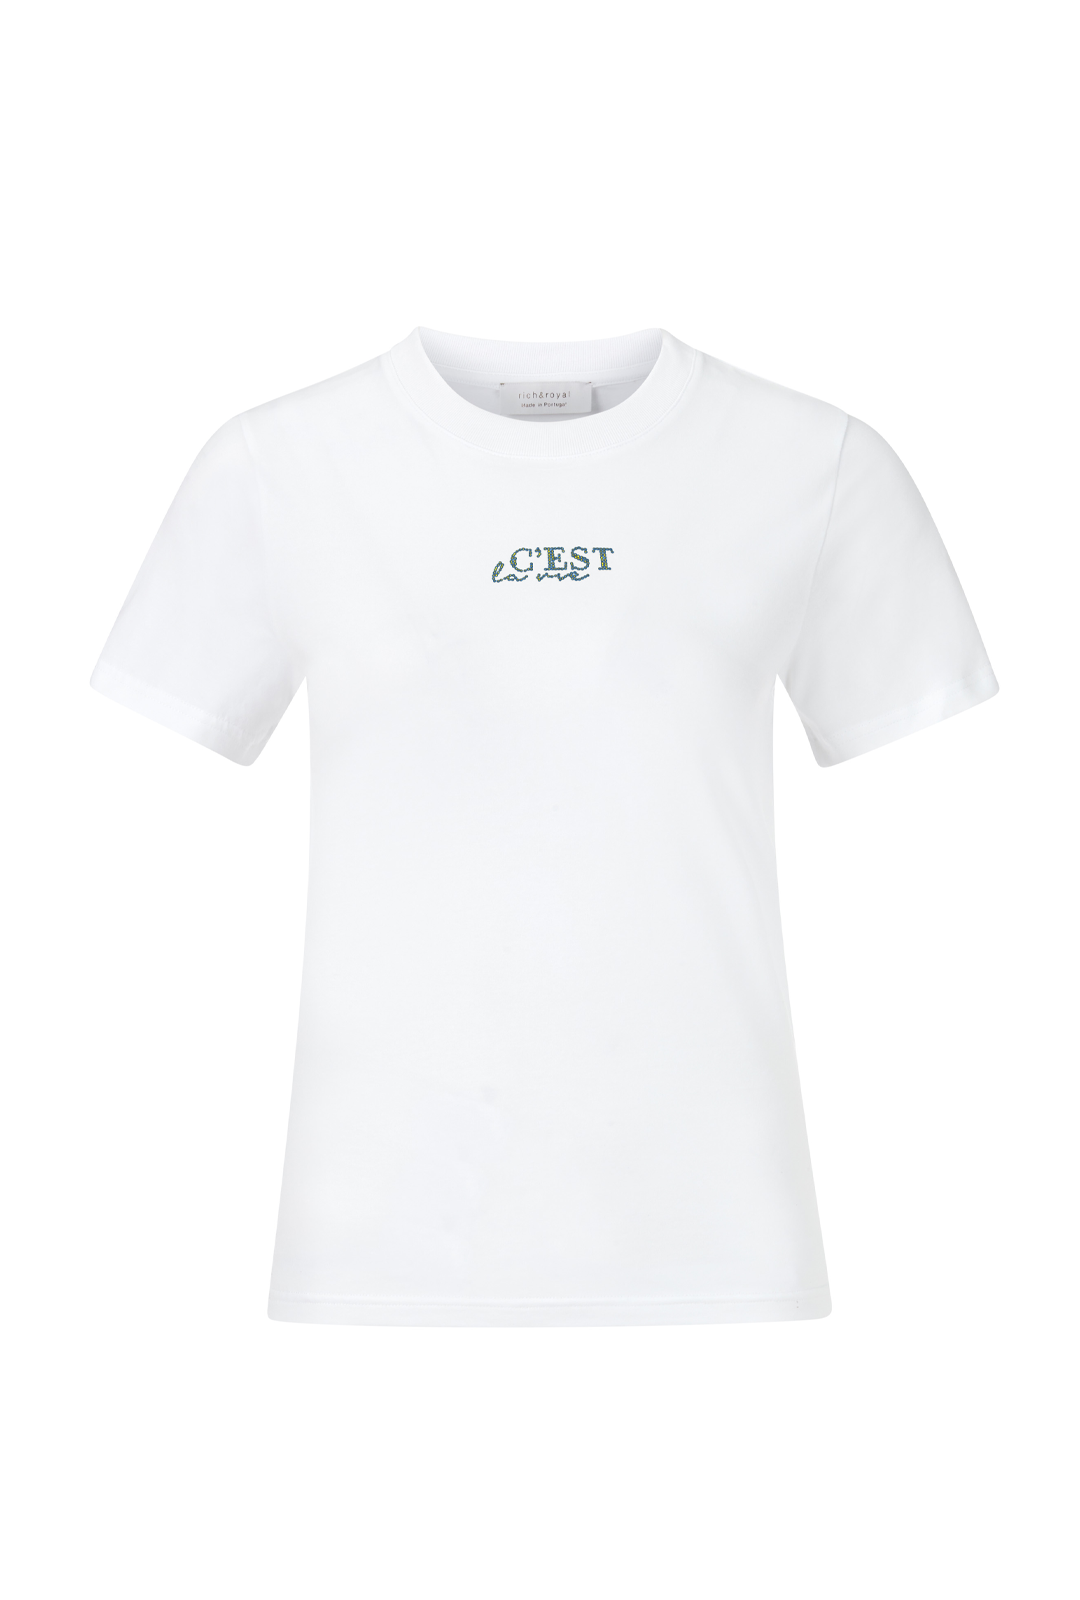 T-Shirt C'est la vie organic